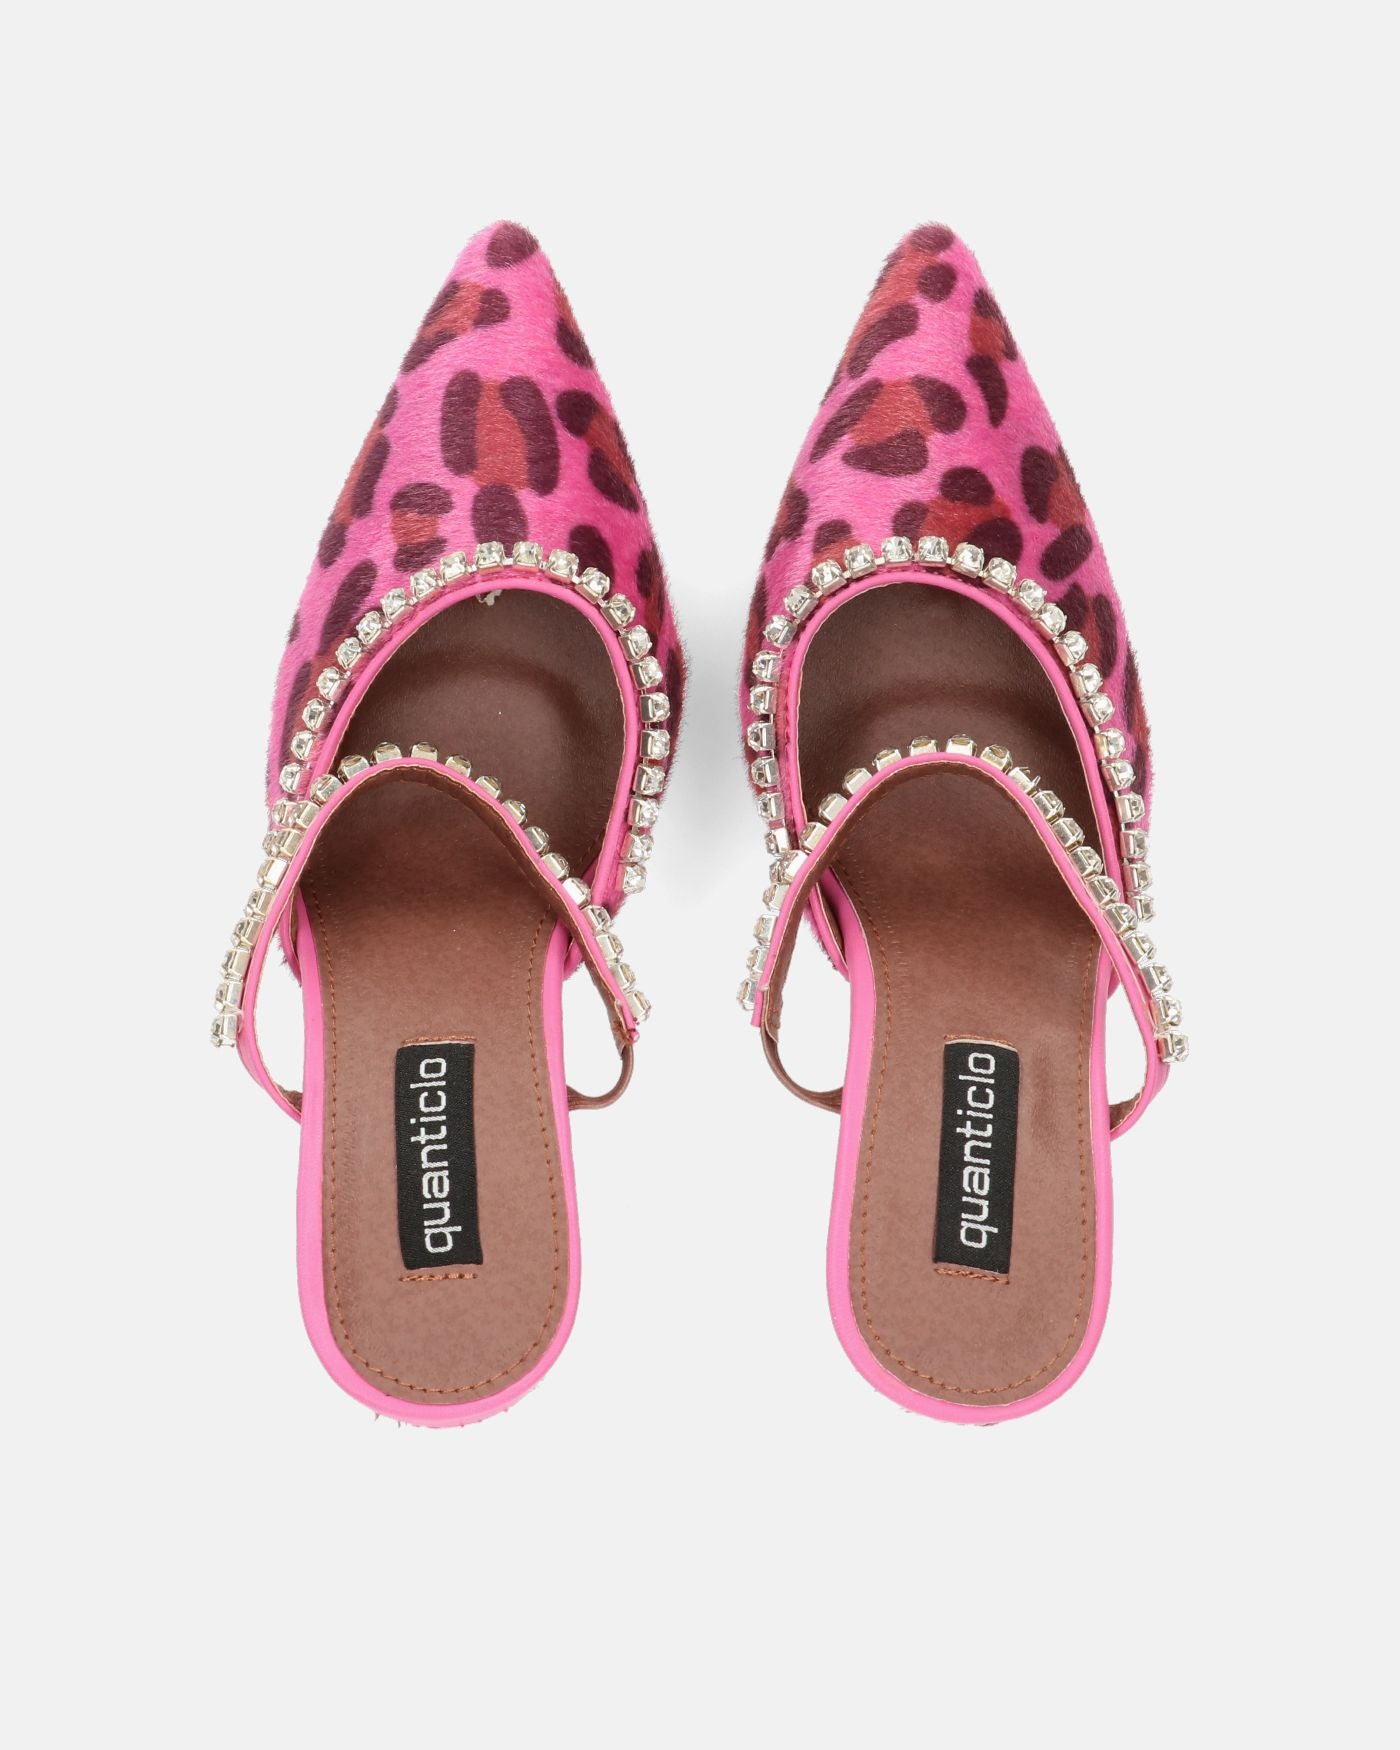 PERAL - scarpa con tacco in leopardato rosa con gemme